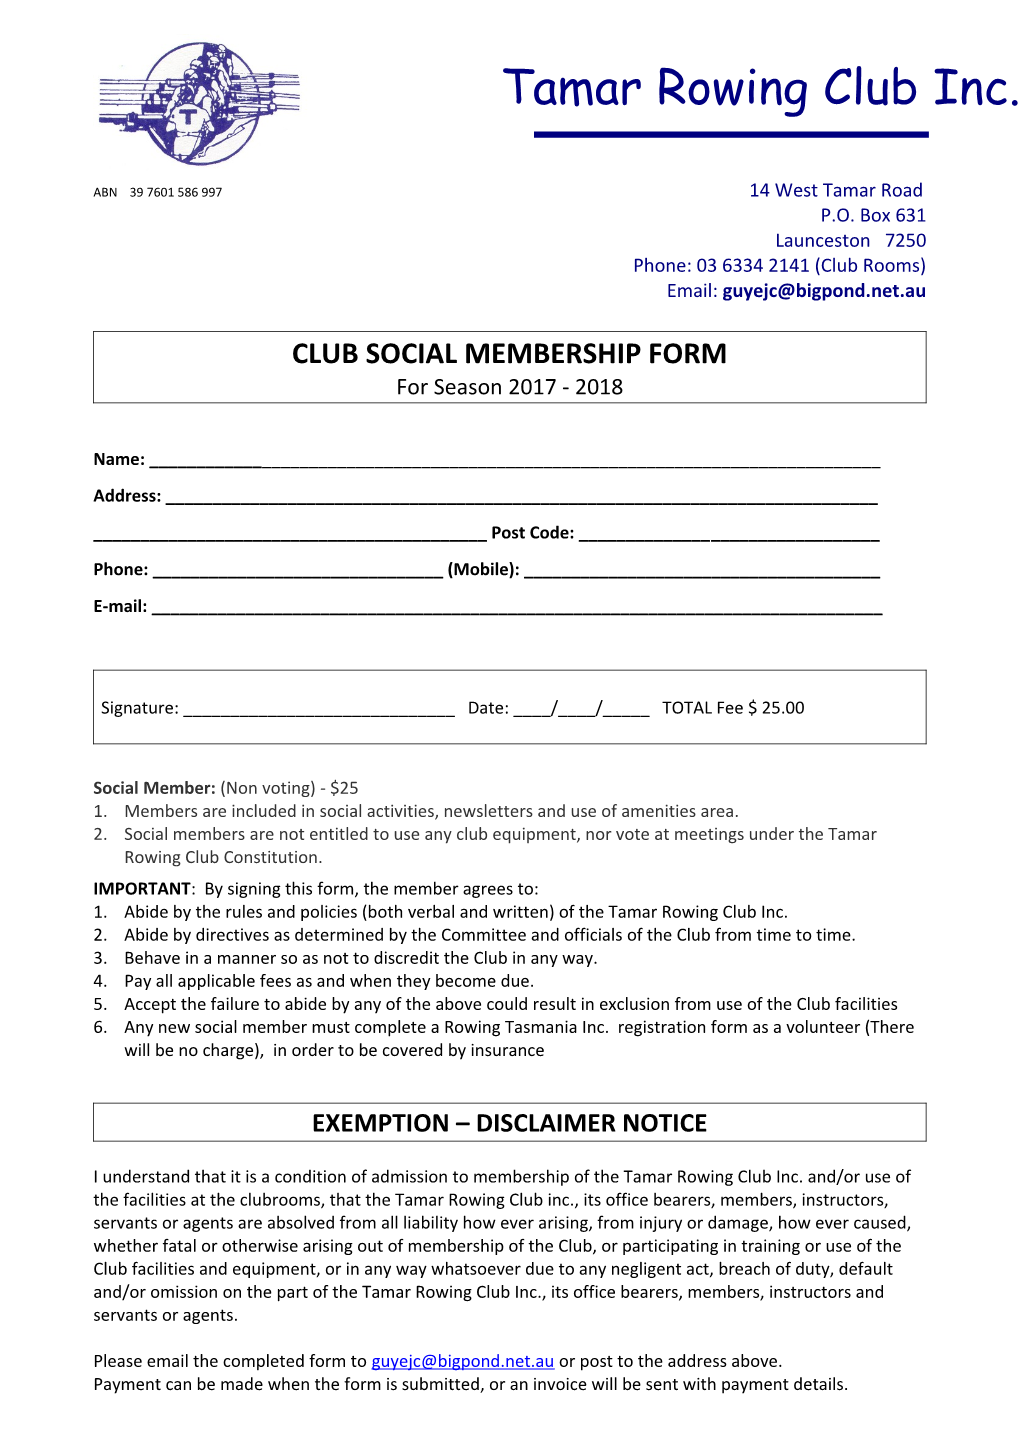 Club Social Membership Form